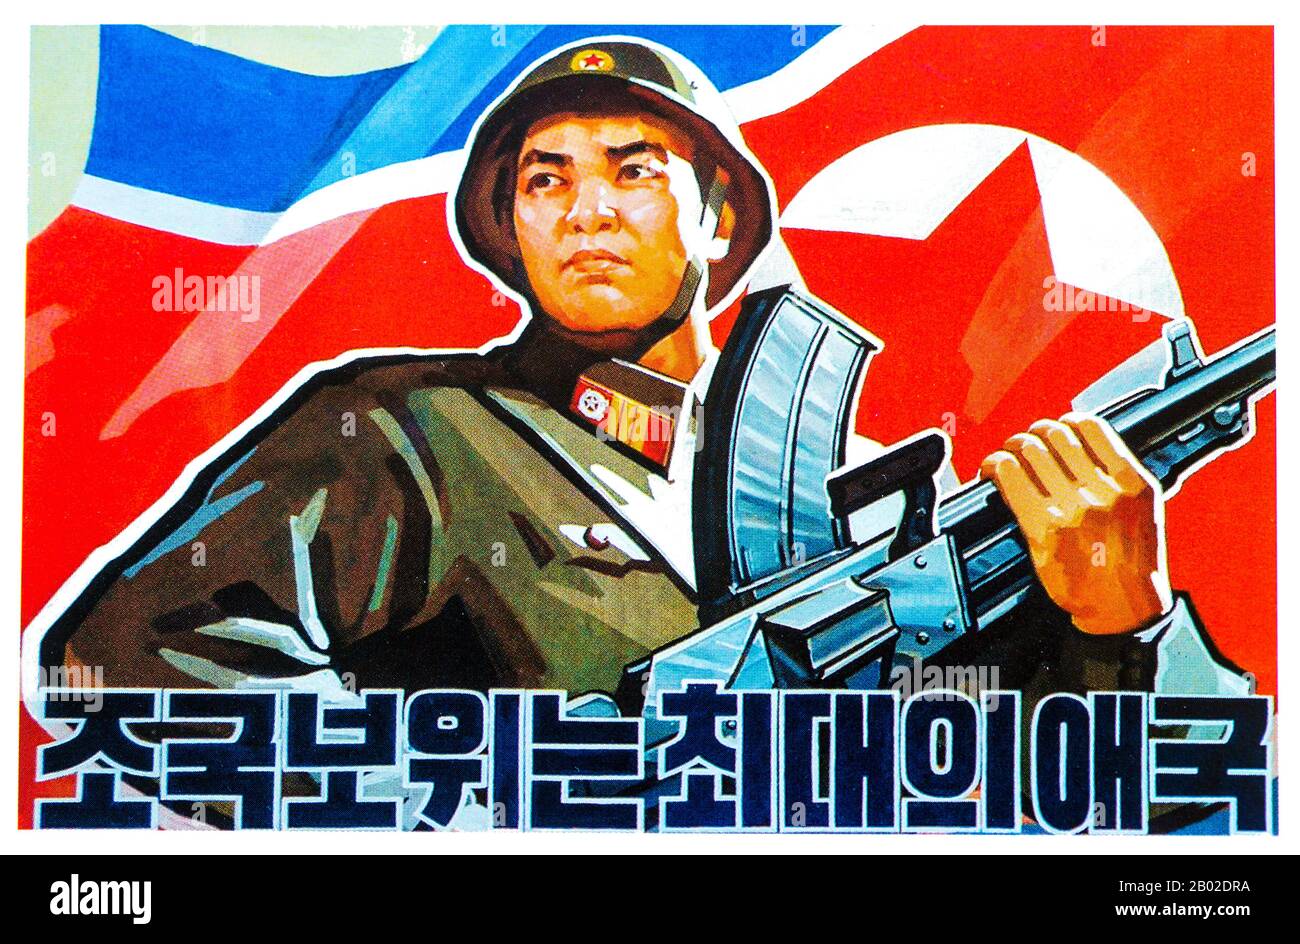 El Ejército Popular Coreano (KPA; Chosŏn'gŭl: 조선인민군; Chosŏn inmin'gun) constituye las fuerzas militares de Corea del Norte. Kim Jong-un es el Comandante Supremo del Ejército Popular de Corea y Presidente de la Comisión Nacional de Defensa. EL EJÉRCITO POPULAR DE COREA consta de cinco ramas, la Fuerza de Tierra, la Marina, la Fuerza Aérea, las Fuerzas estratégicas de cohetes y la Fuerza de operación Especial. Además, los guardias rojos trabajador-campesino están bajo el control del EJÉRCITO POPULAR DE COREA. En 1971, Kim Il-sung ordenó que el 'día de la Fundación militar' se cambiara del 8 de febrero al 25 de abril, día nominal de establecimiento de su guerrilla antijaponesa a Foto de stock